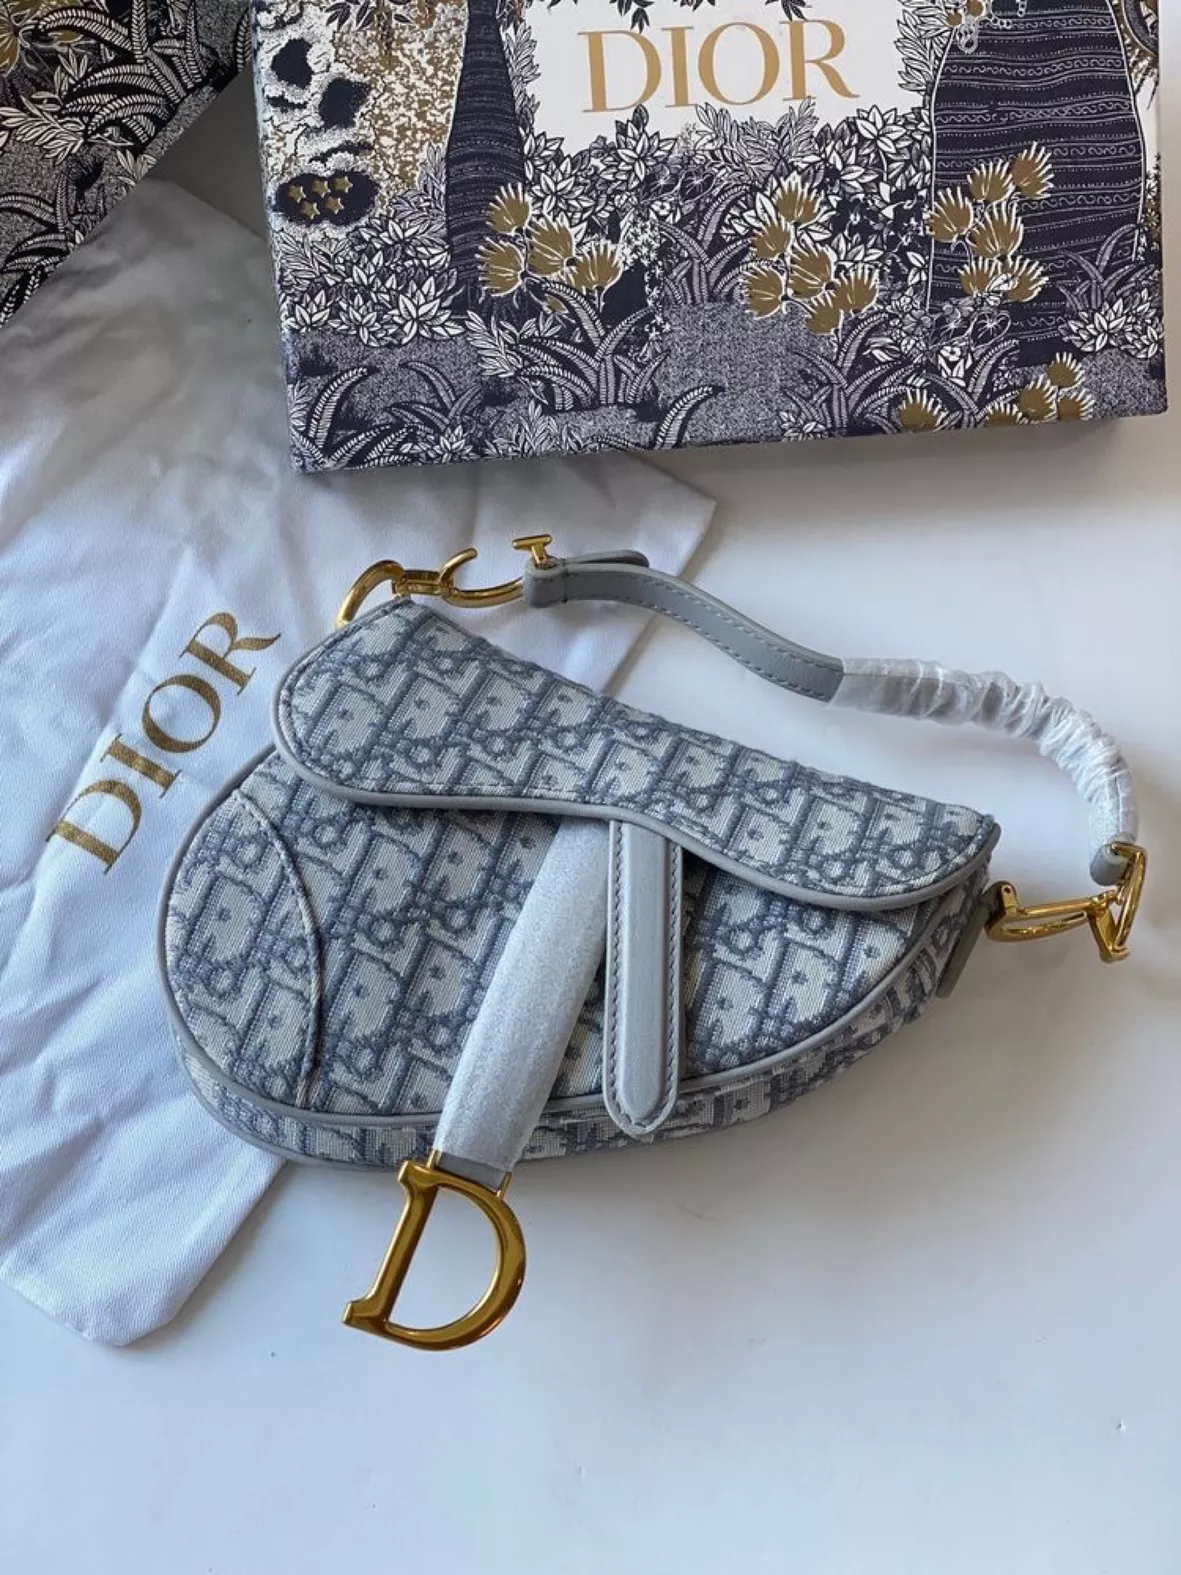 christian dior Dhgate  Dior bag, Dior purses, Christian dior bags